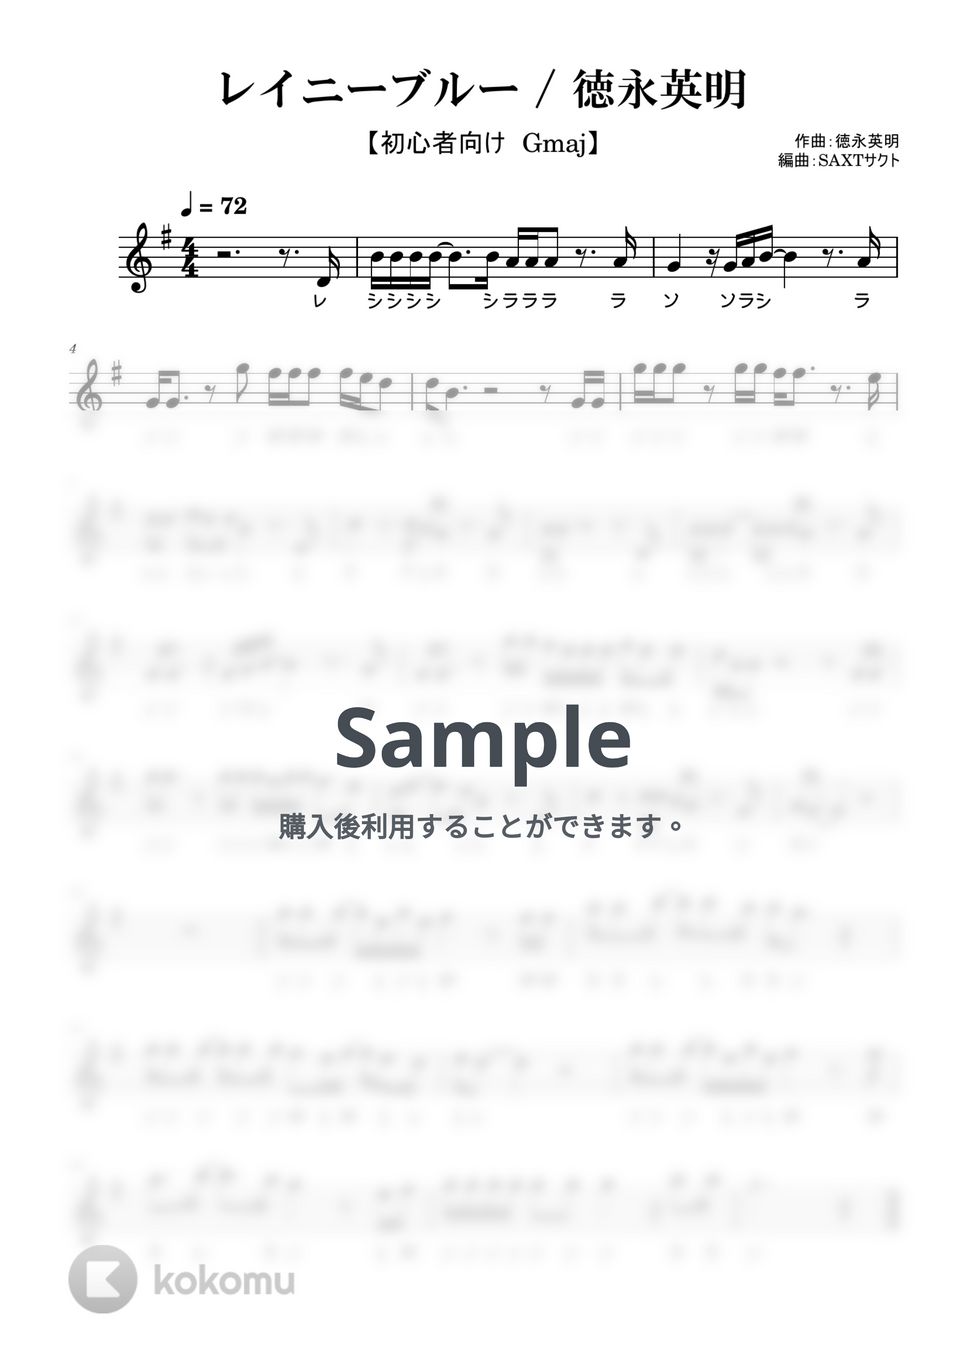 徳永英明 - レイニーブルー (めちゃラク譜) by SAXT